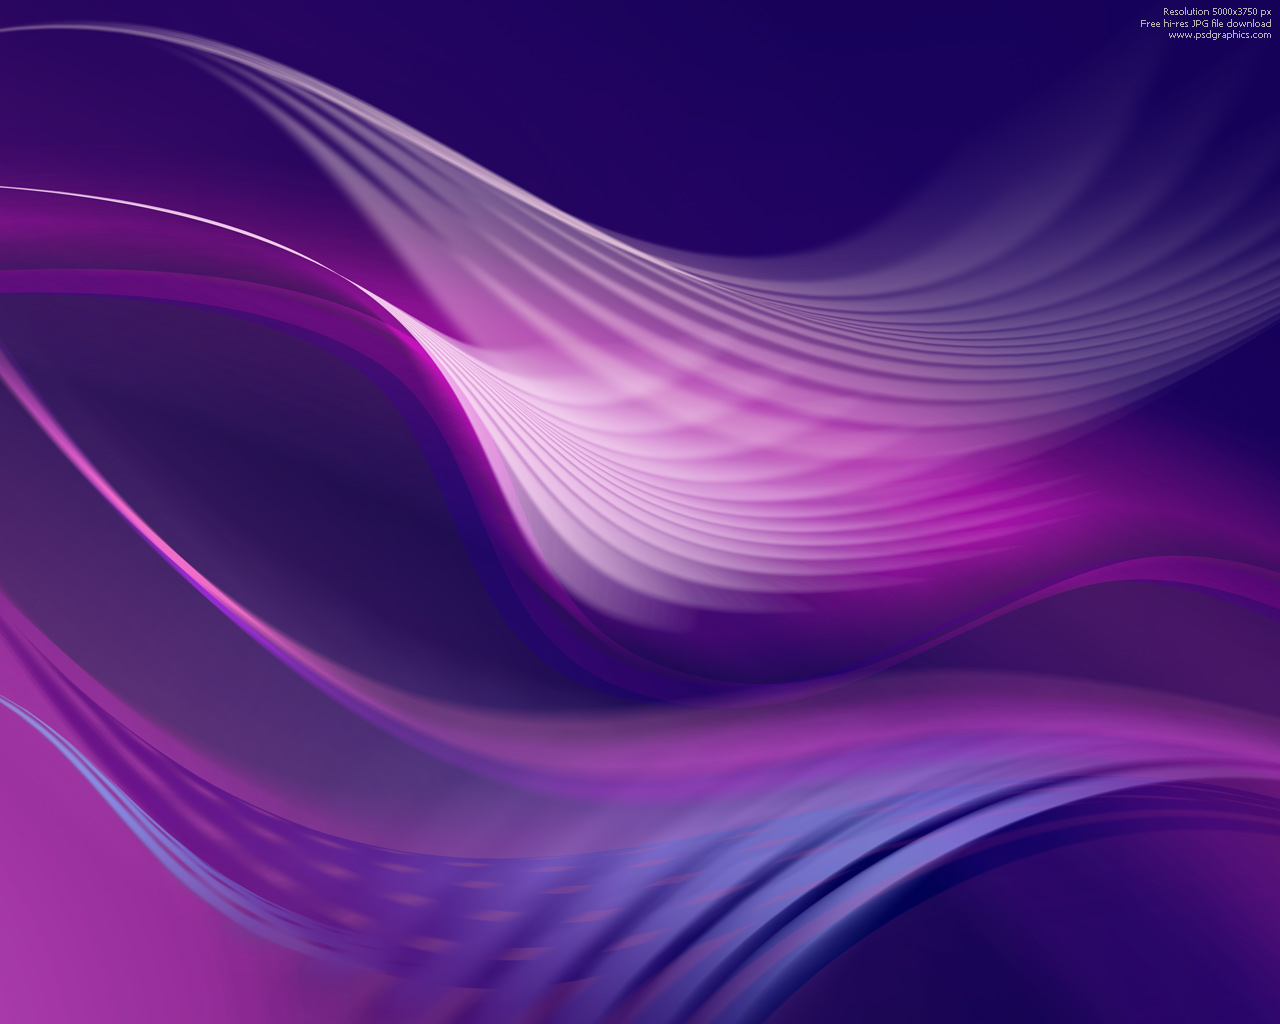 Fan Abstract Purple Design